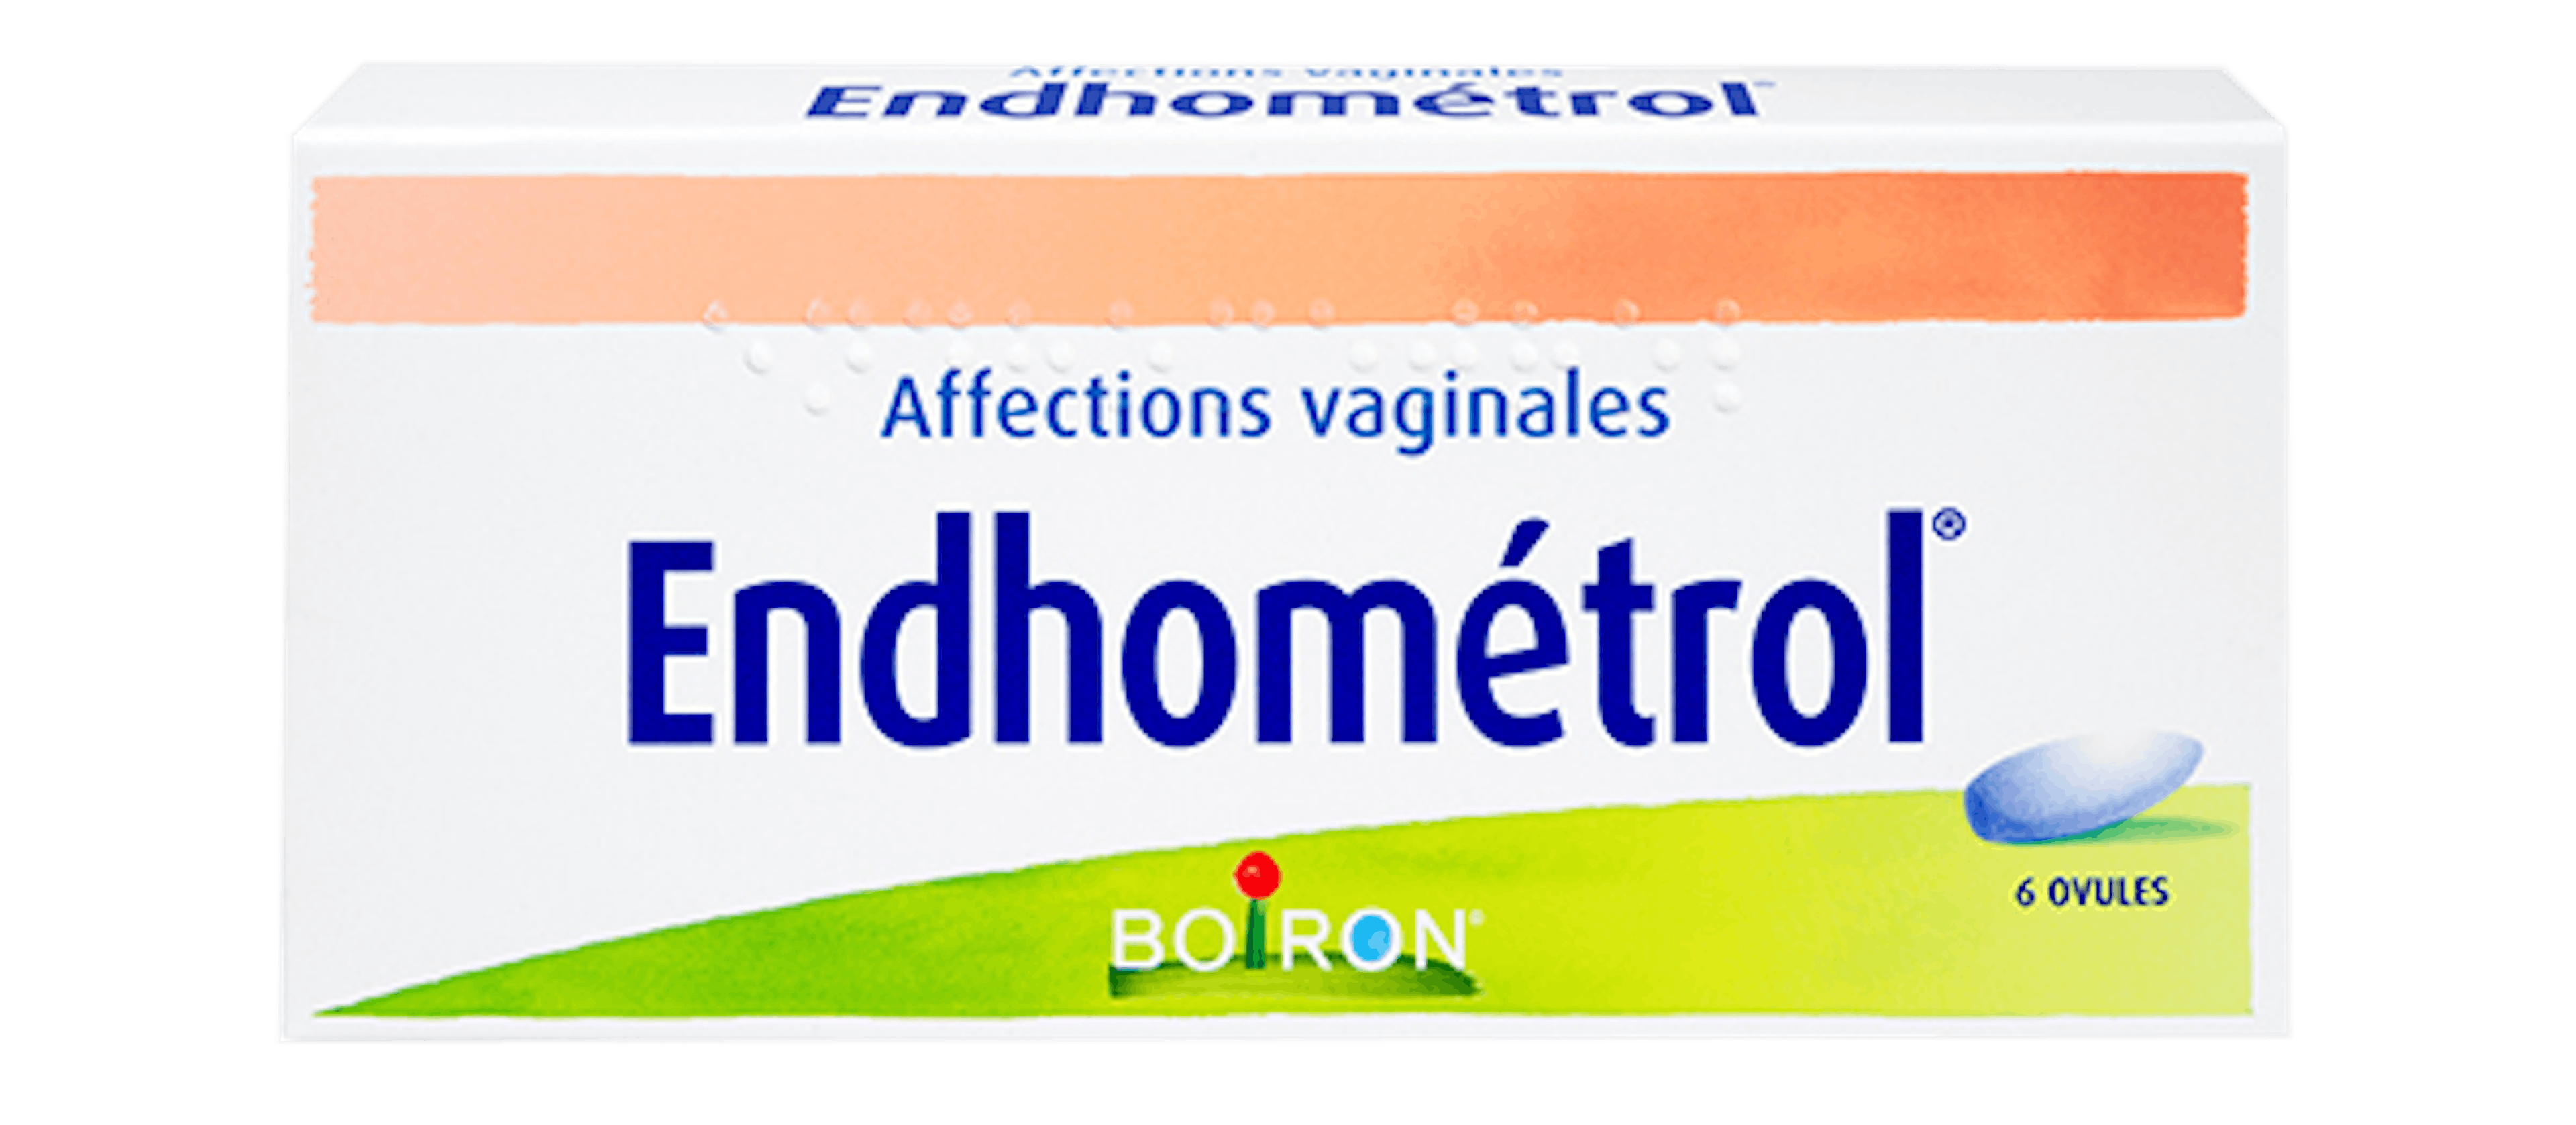 Homéopathie affections vaginales - Endhométrol® Boiron